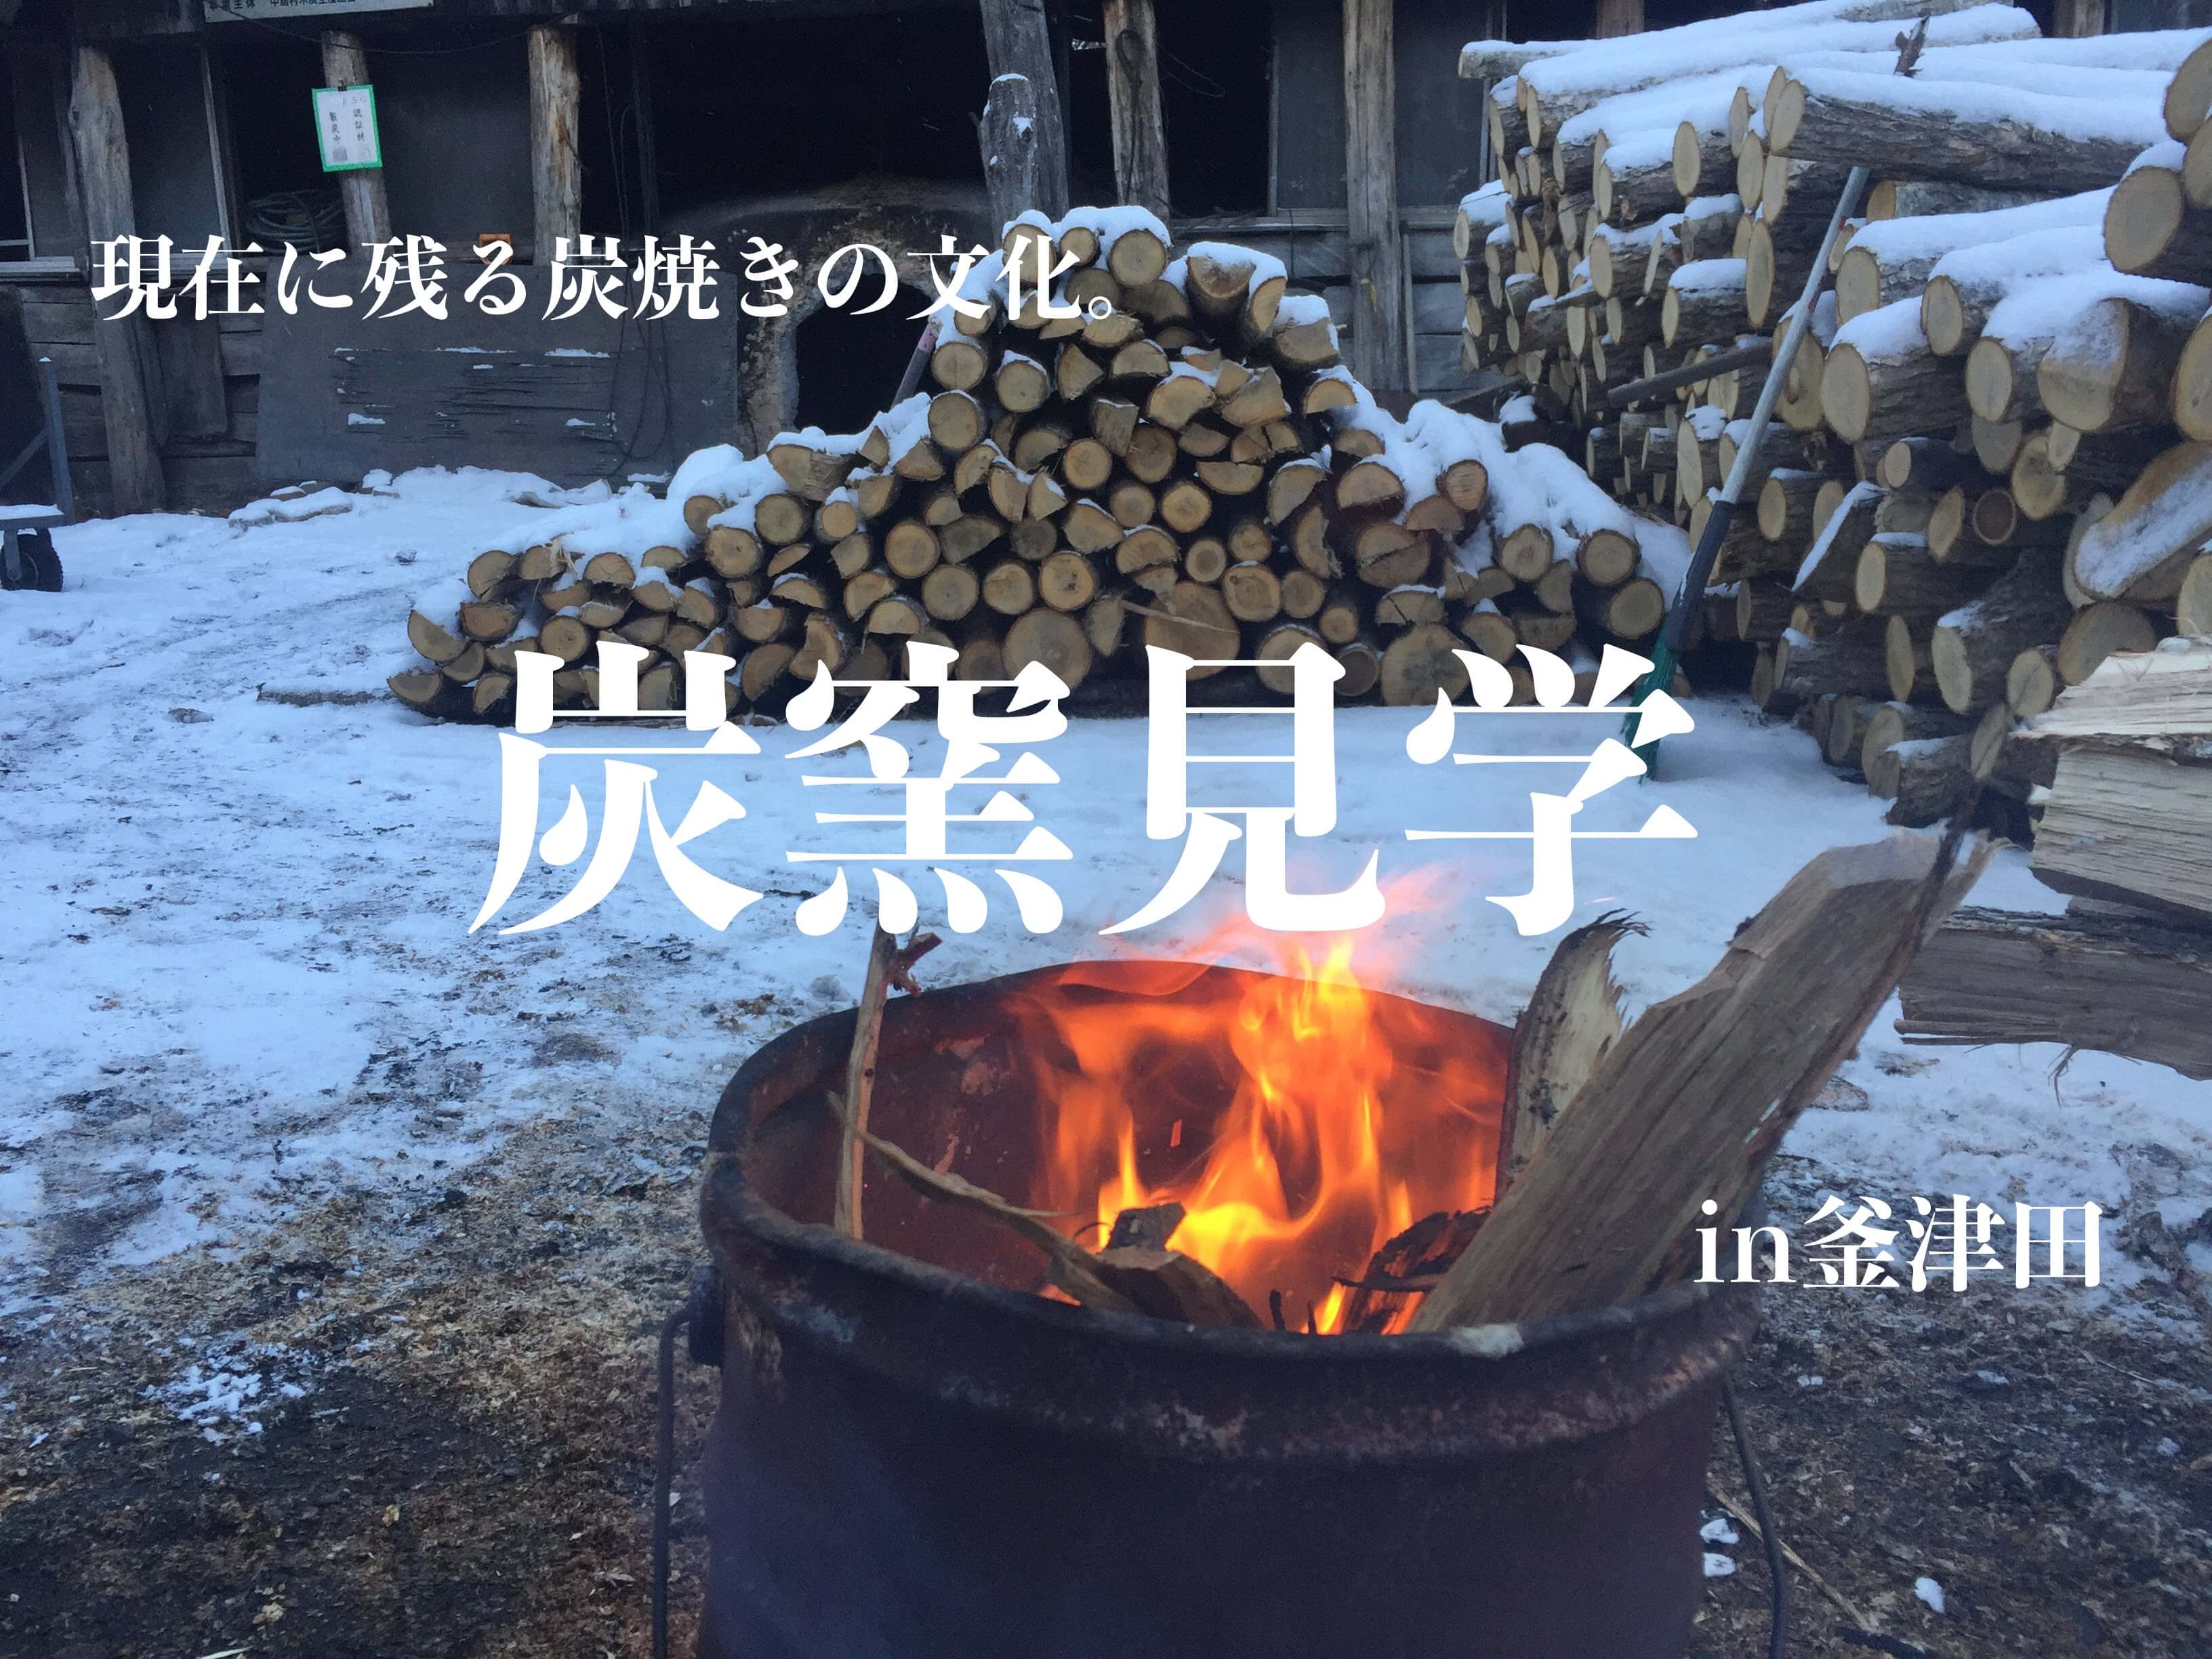 現在に残る炭焼き文化。岩泉の奥地「釜津田」で雪景色の炭窯を見学。